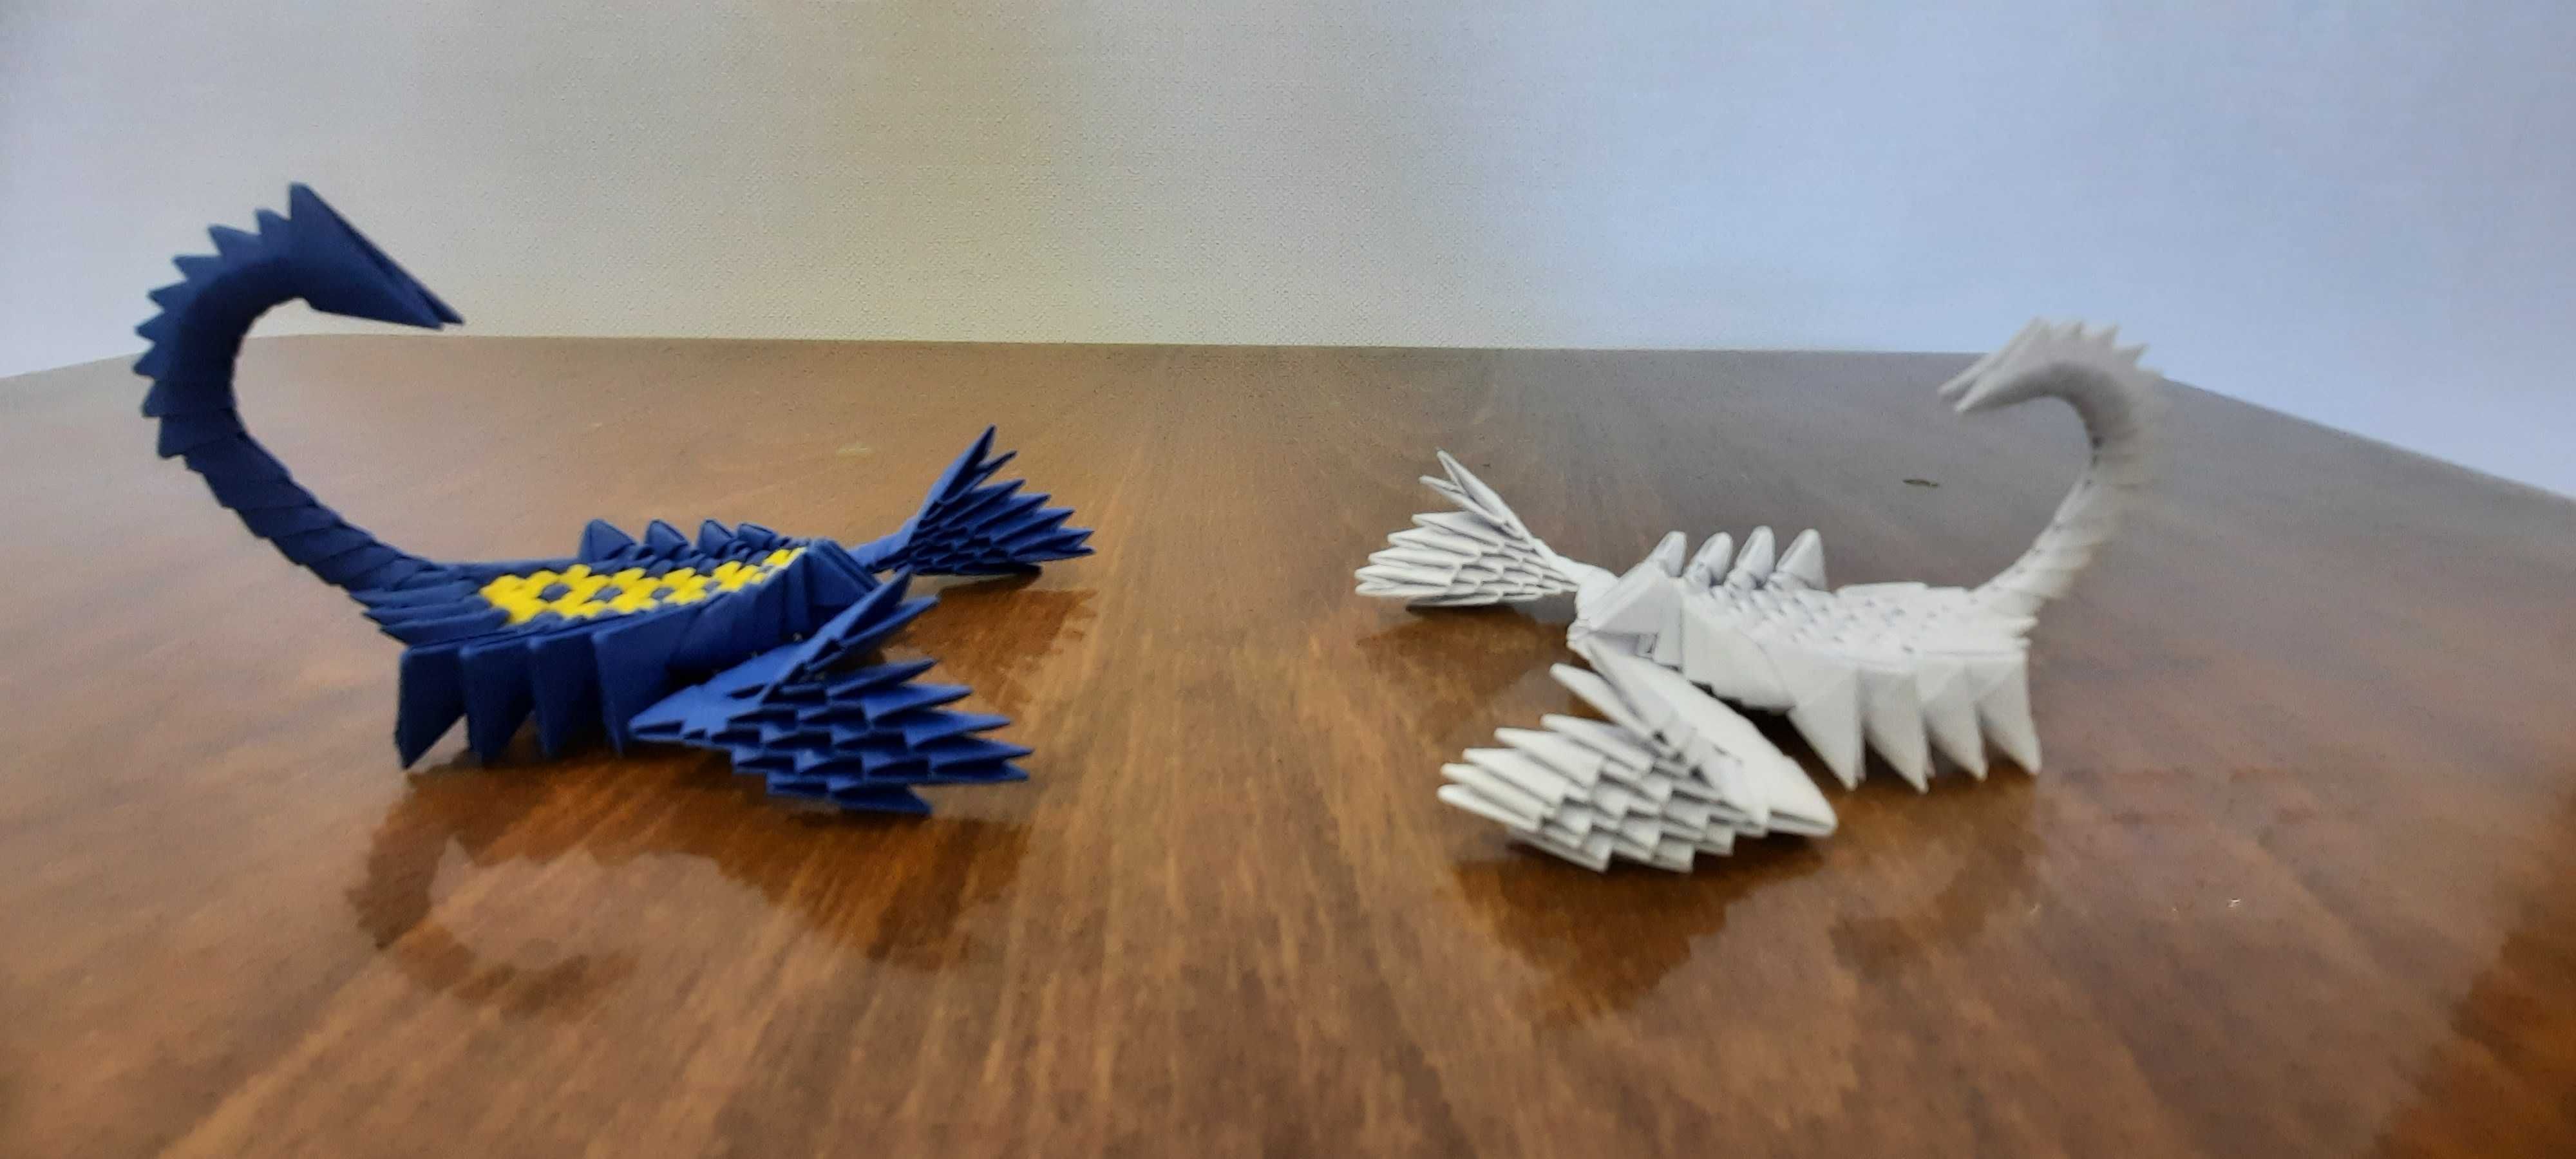 Вироби із модульного 3D оригамі.
Матеріал: папір, клей пва, душа.